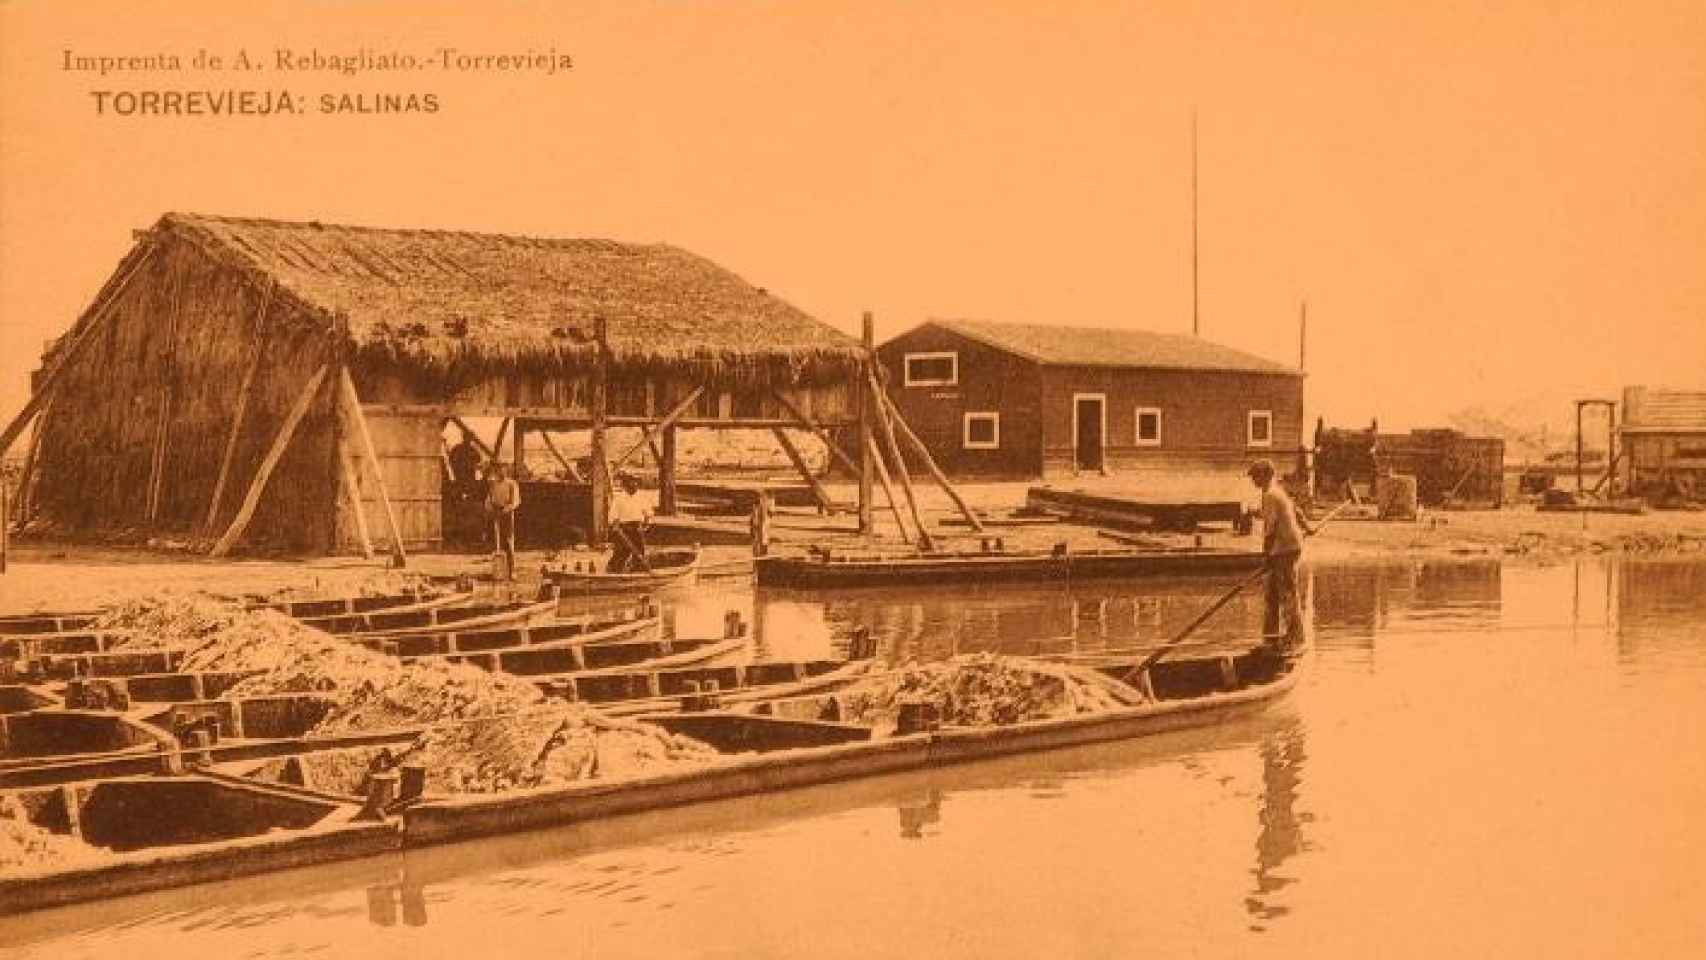 Salinas de Torrevieja, foto histórica.